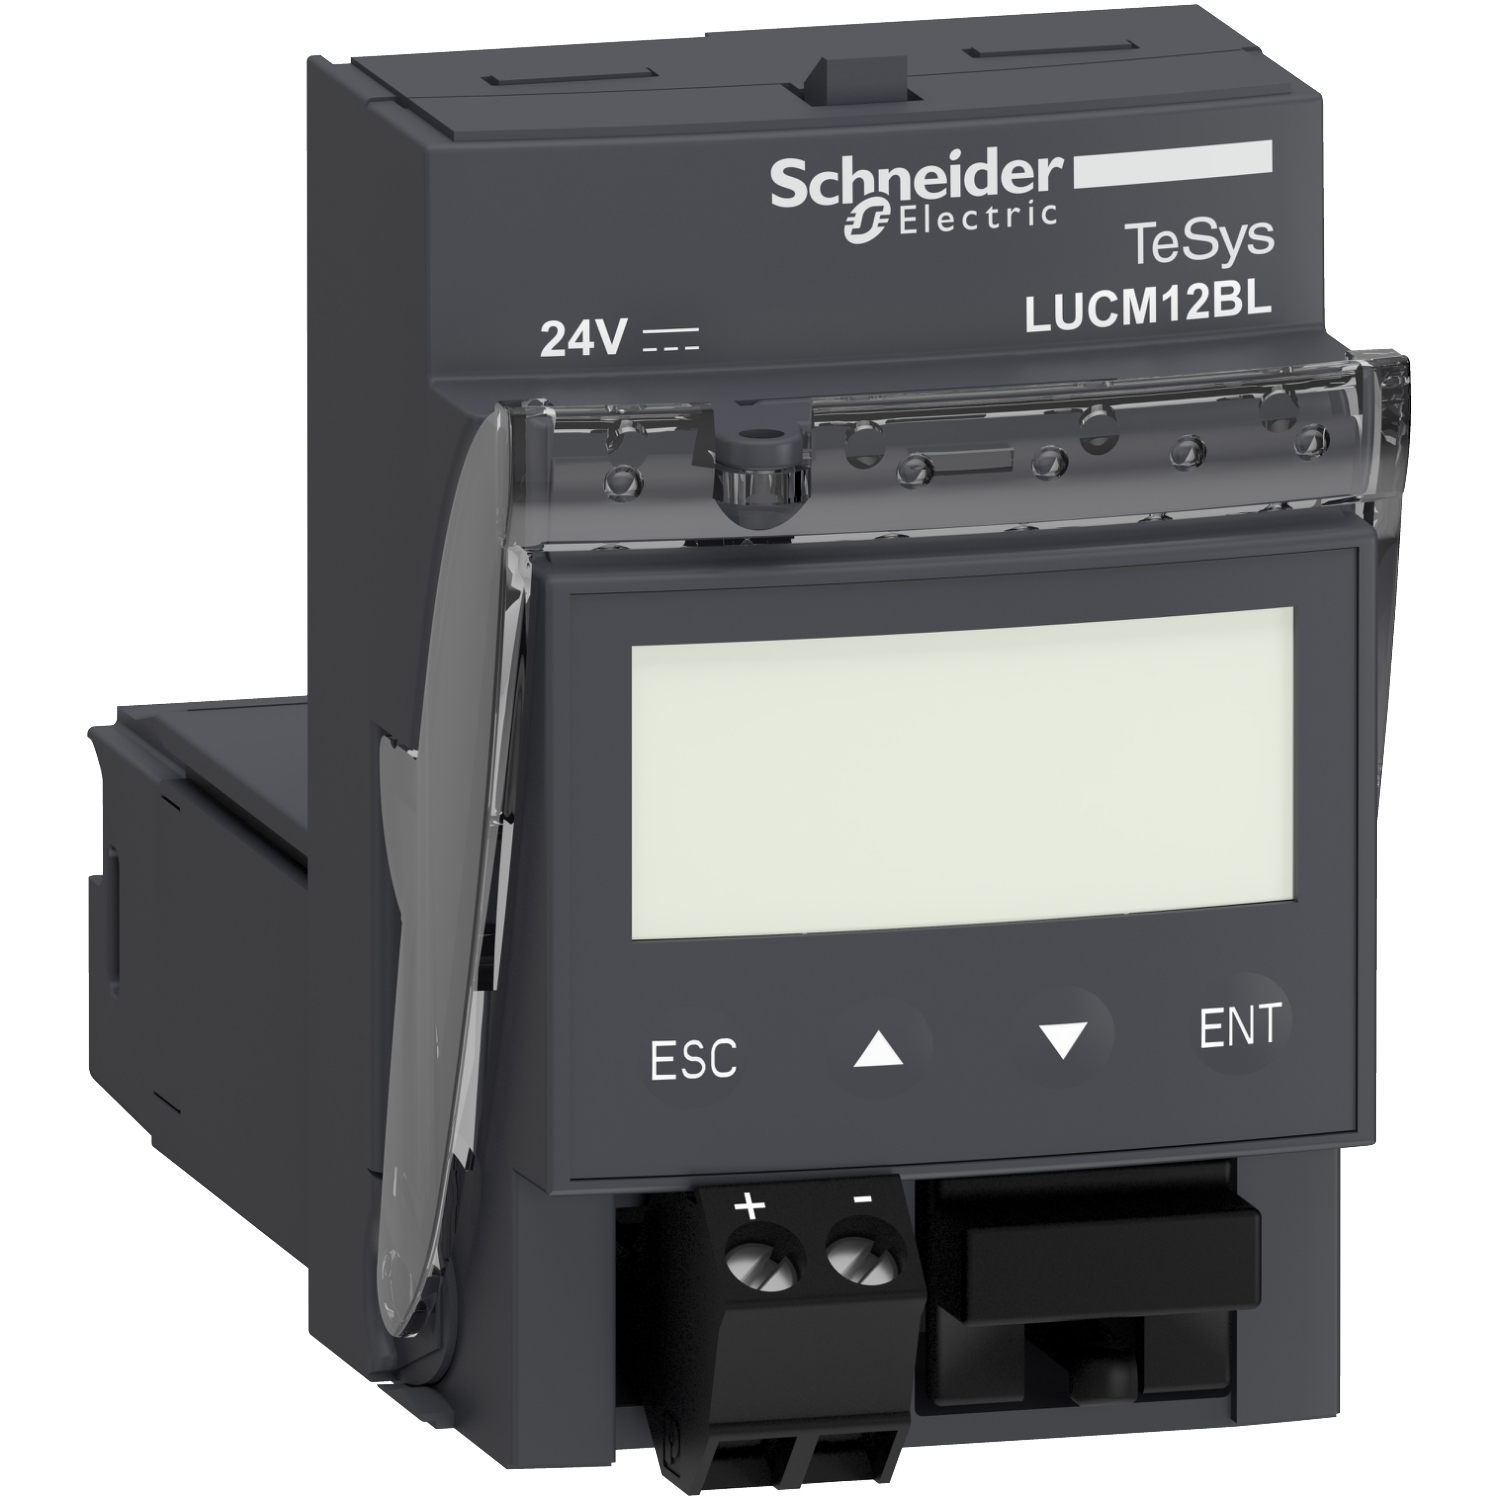 Bimetalni elektronski releji za montažu na kontaktore  i kontrolne jedinice  LUC Schneider